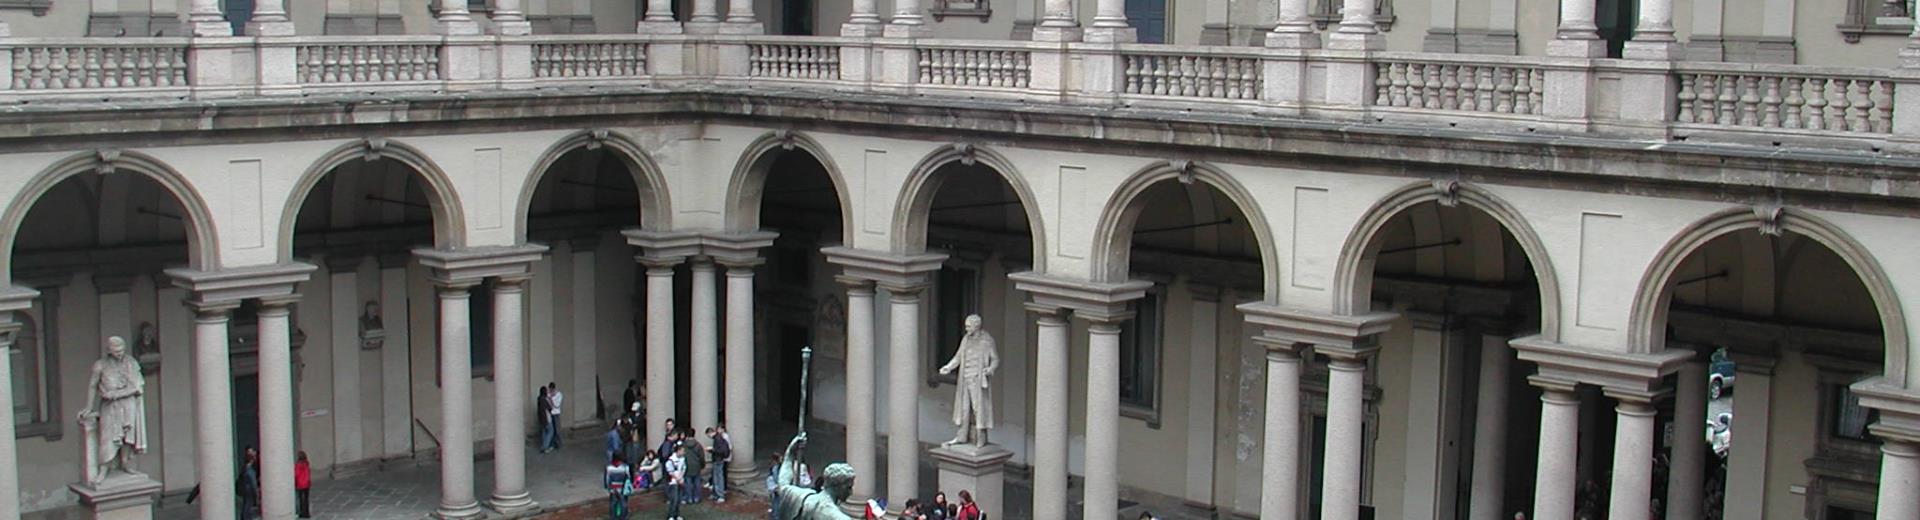 Pinacoteca di Brera - Milano